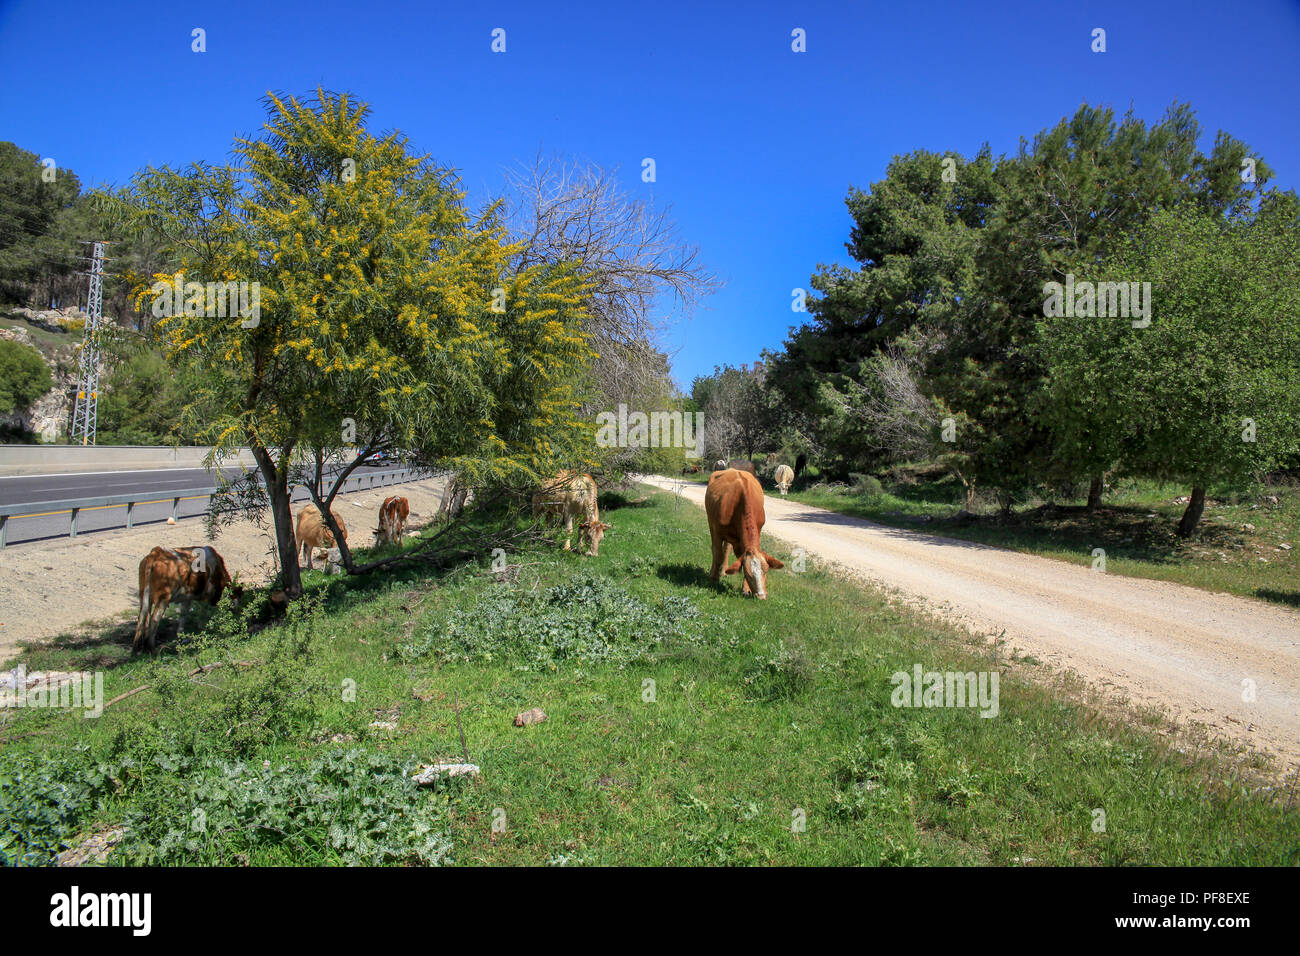 Cattle graze in a field near a busy road Stock Photo